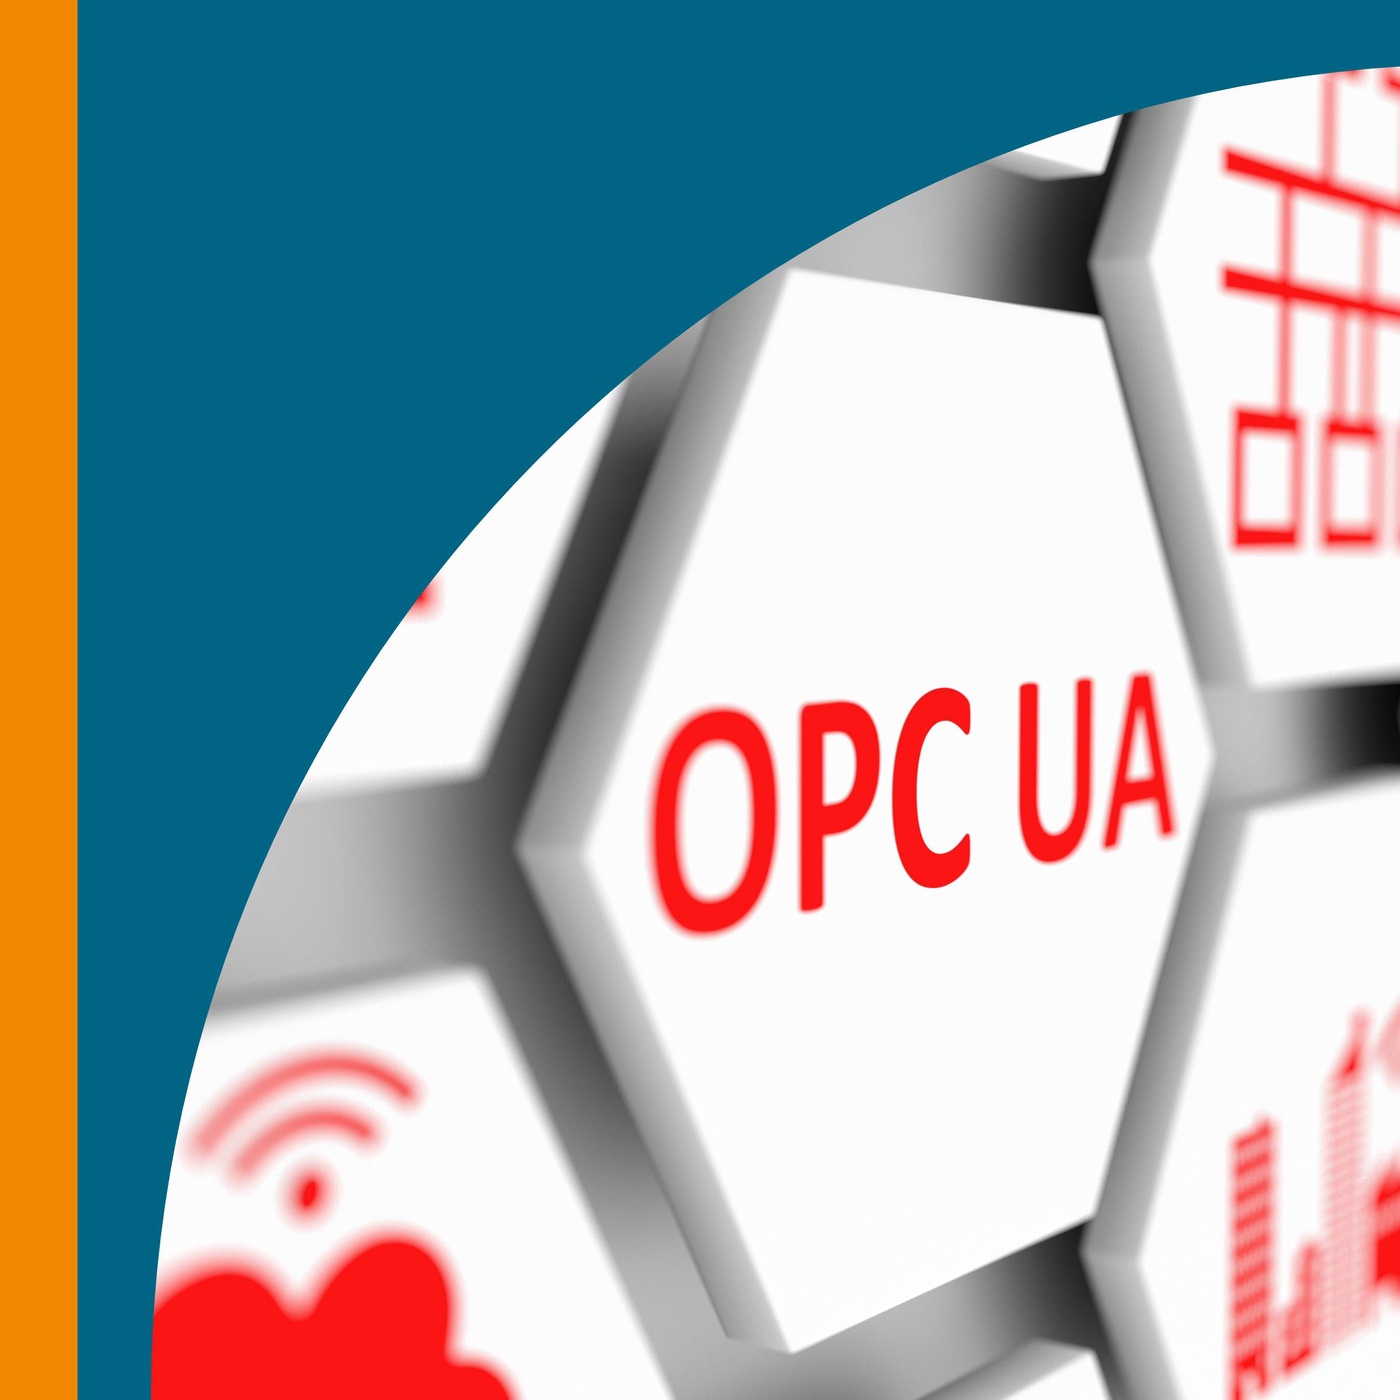 OPC UA - Nahtlose Kommunikation zwischen Maschinen